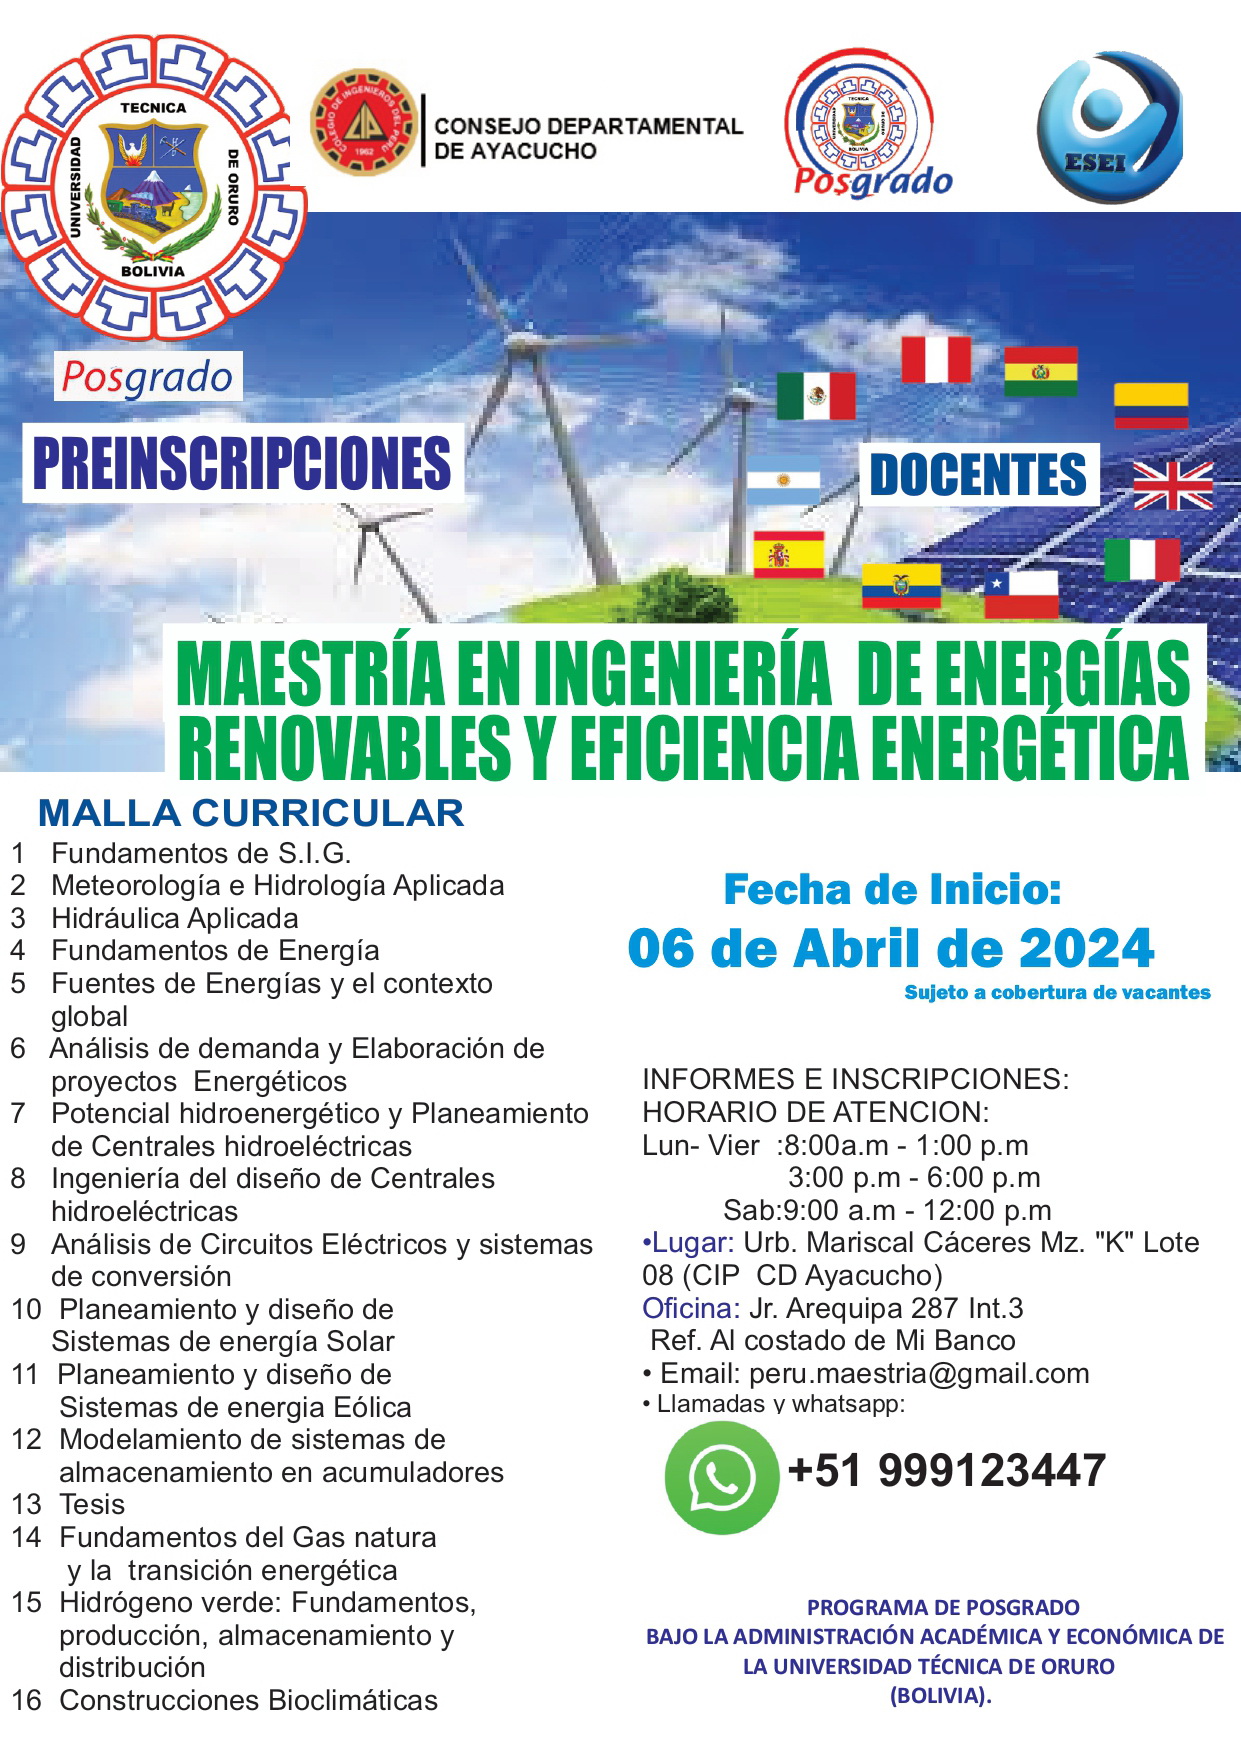 MAESTRIA EN INGENIERIA DE ENERGIAS RENOVABLES Y EFICIENCIA ENERGETICA